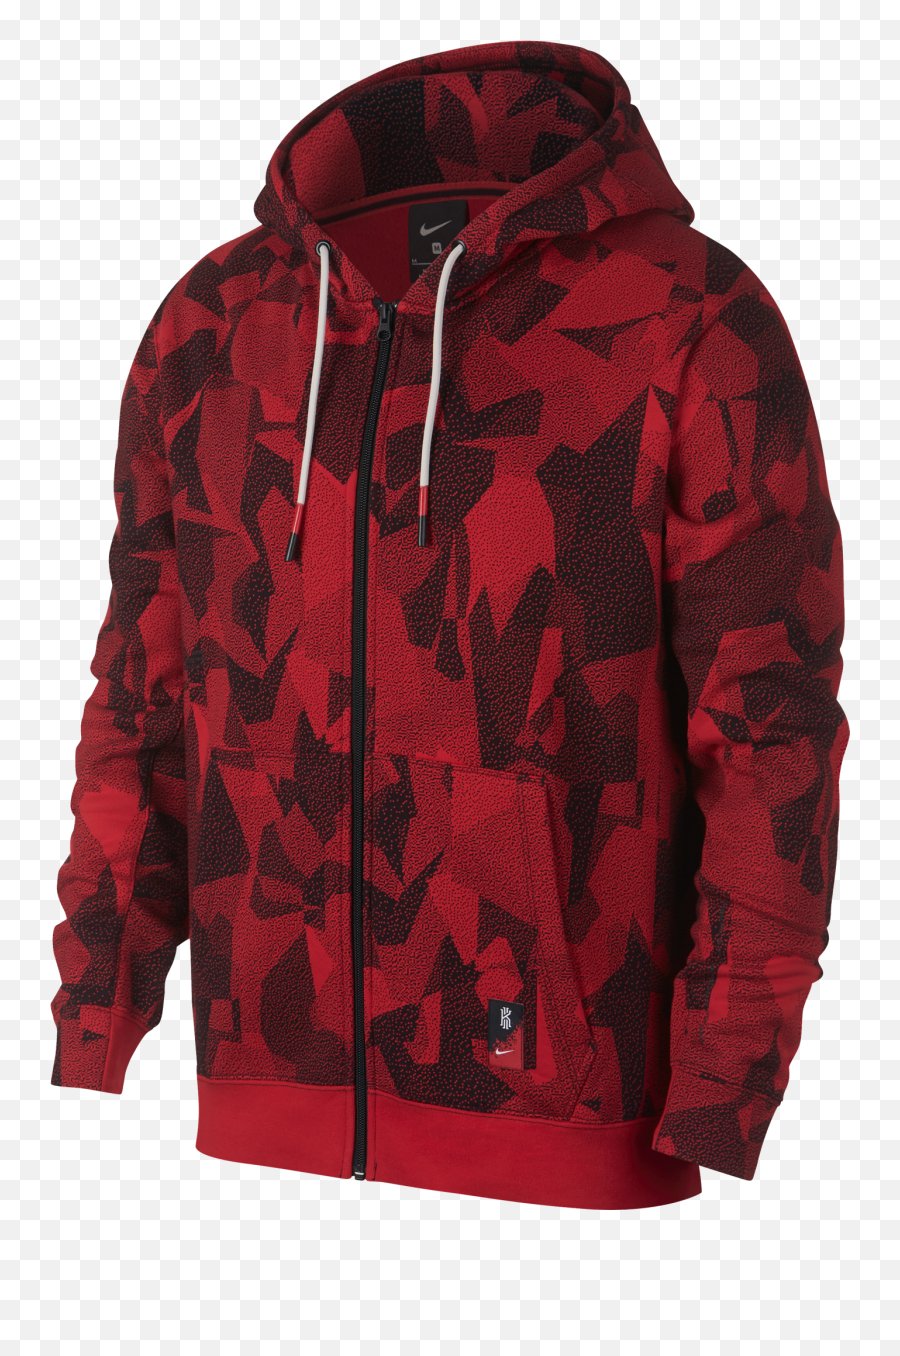 Kyrie Irving Sweatshirt Nike - Cool Best Hoodies For Men Emoji,Kyrie Irving Logo